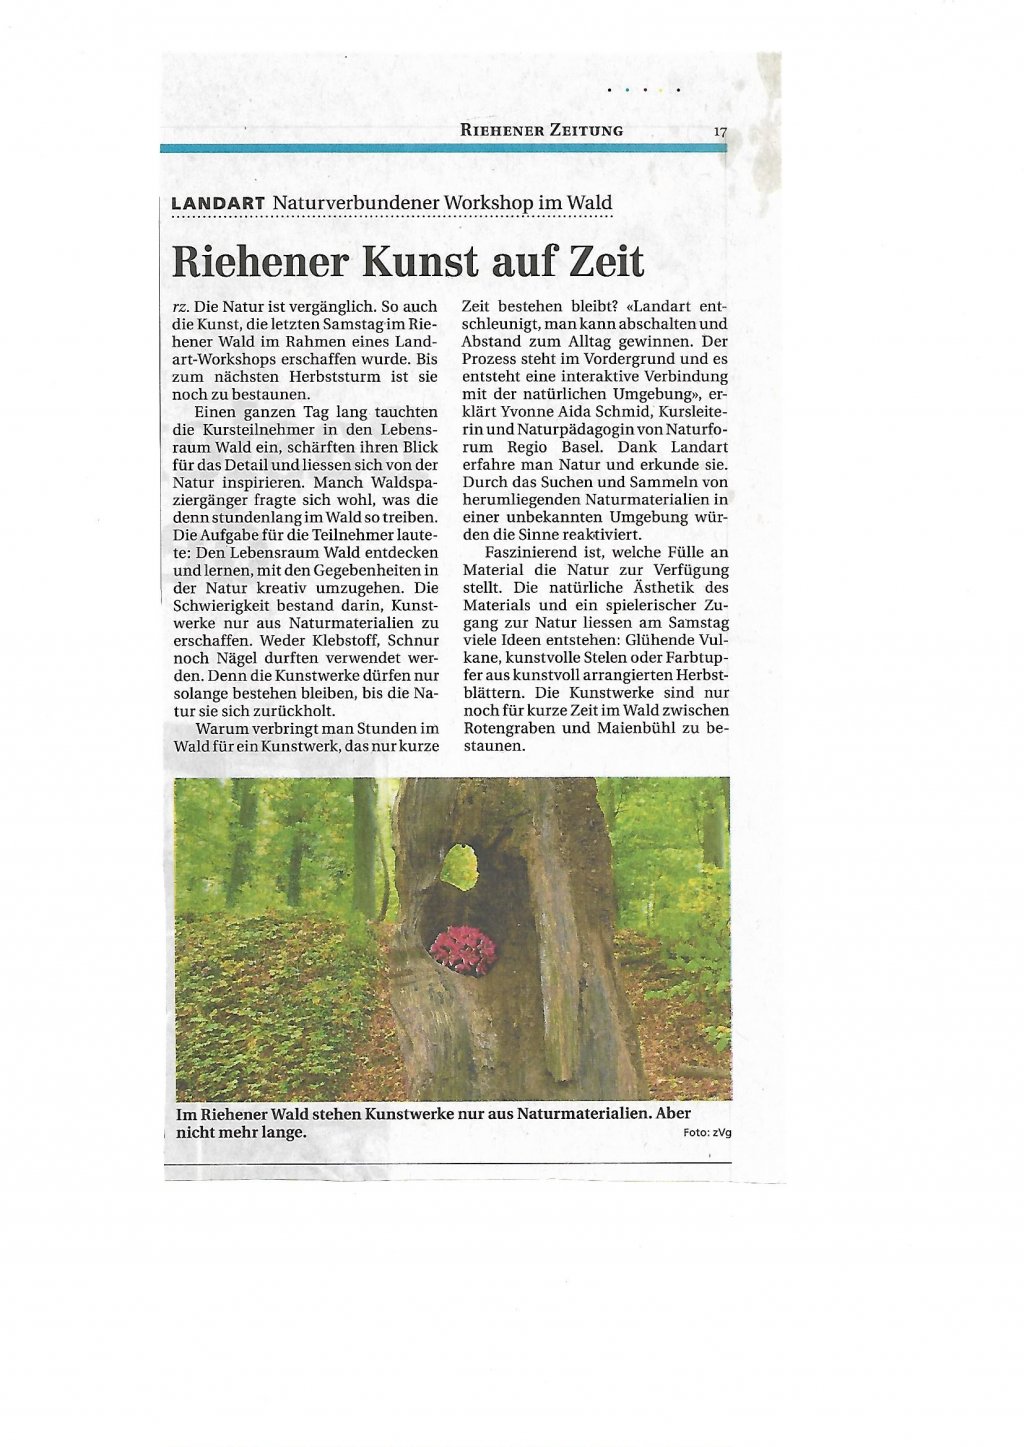 image-8772236-Zeitungsbericht_Okt.17.w640.jpg